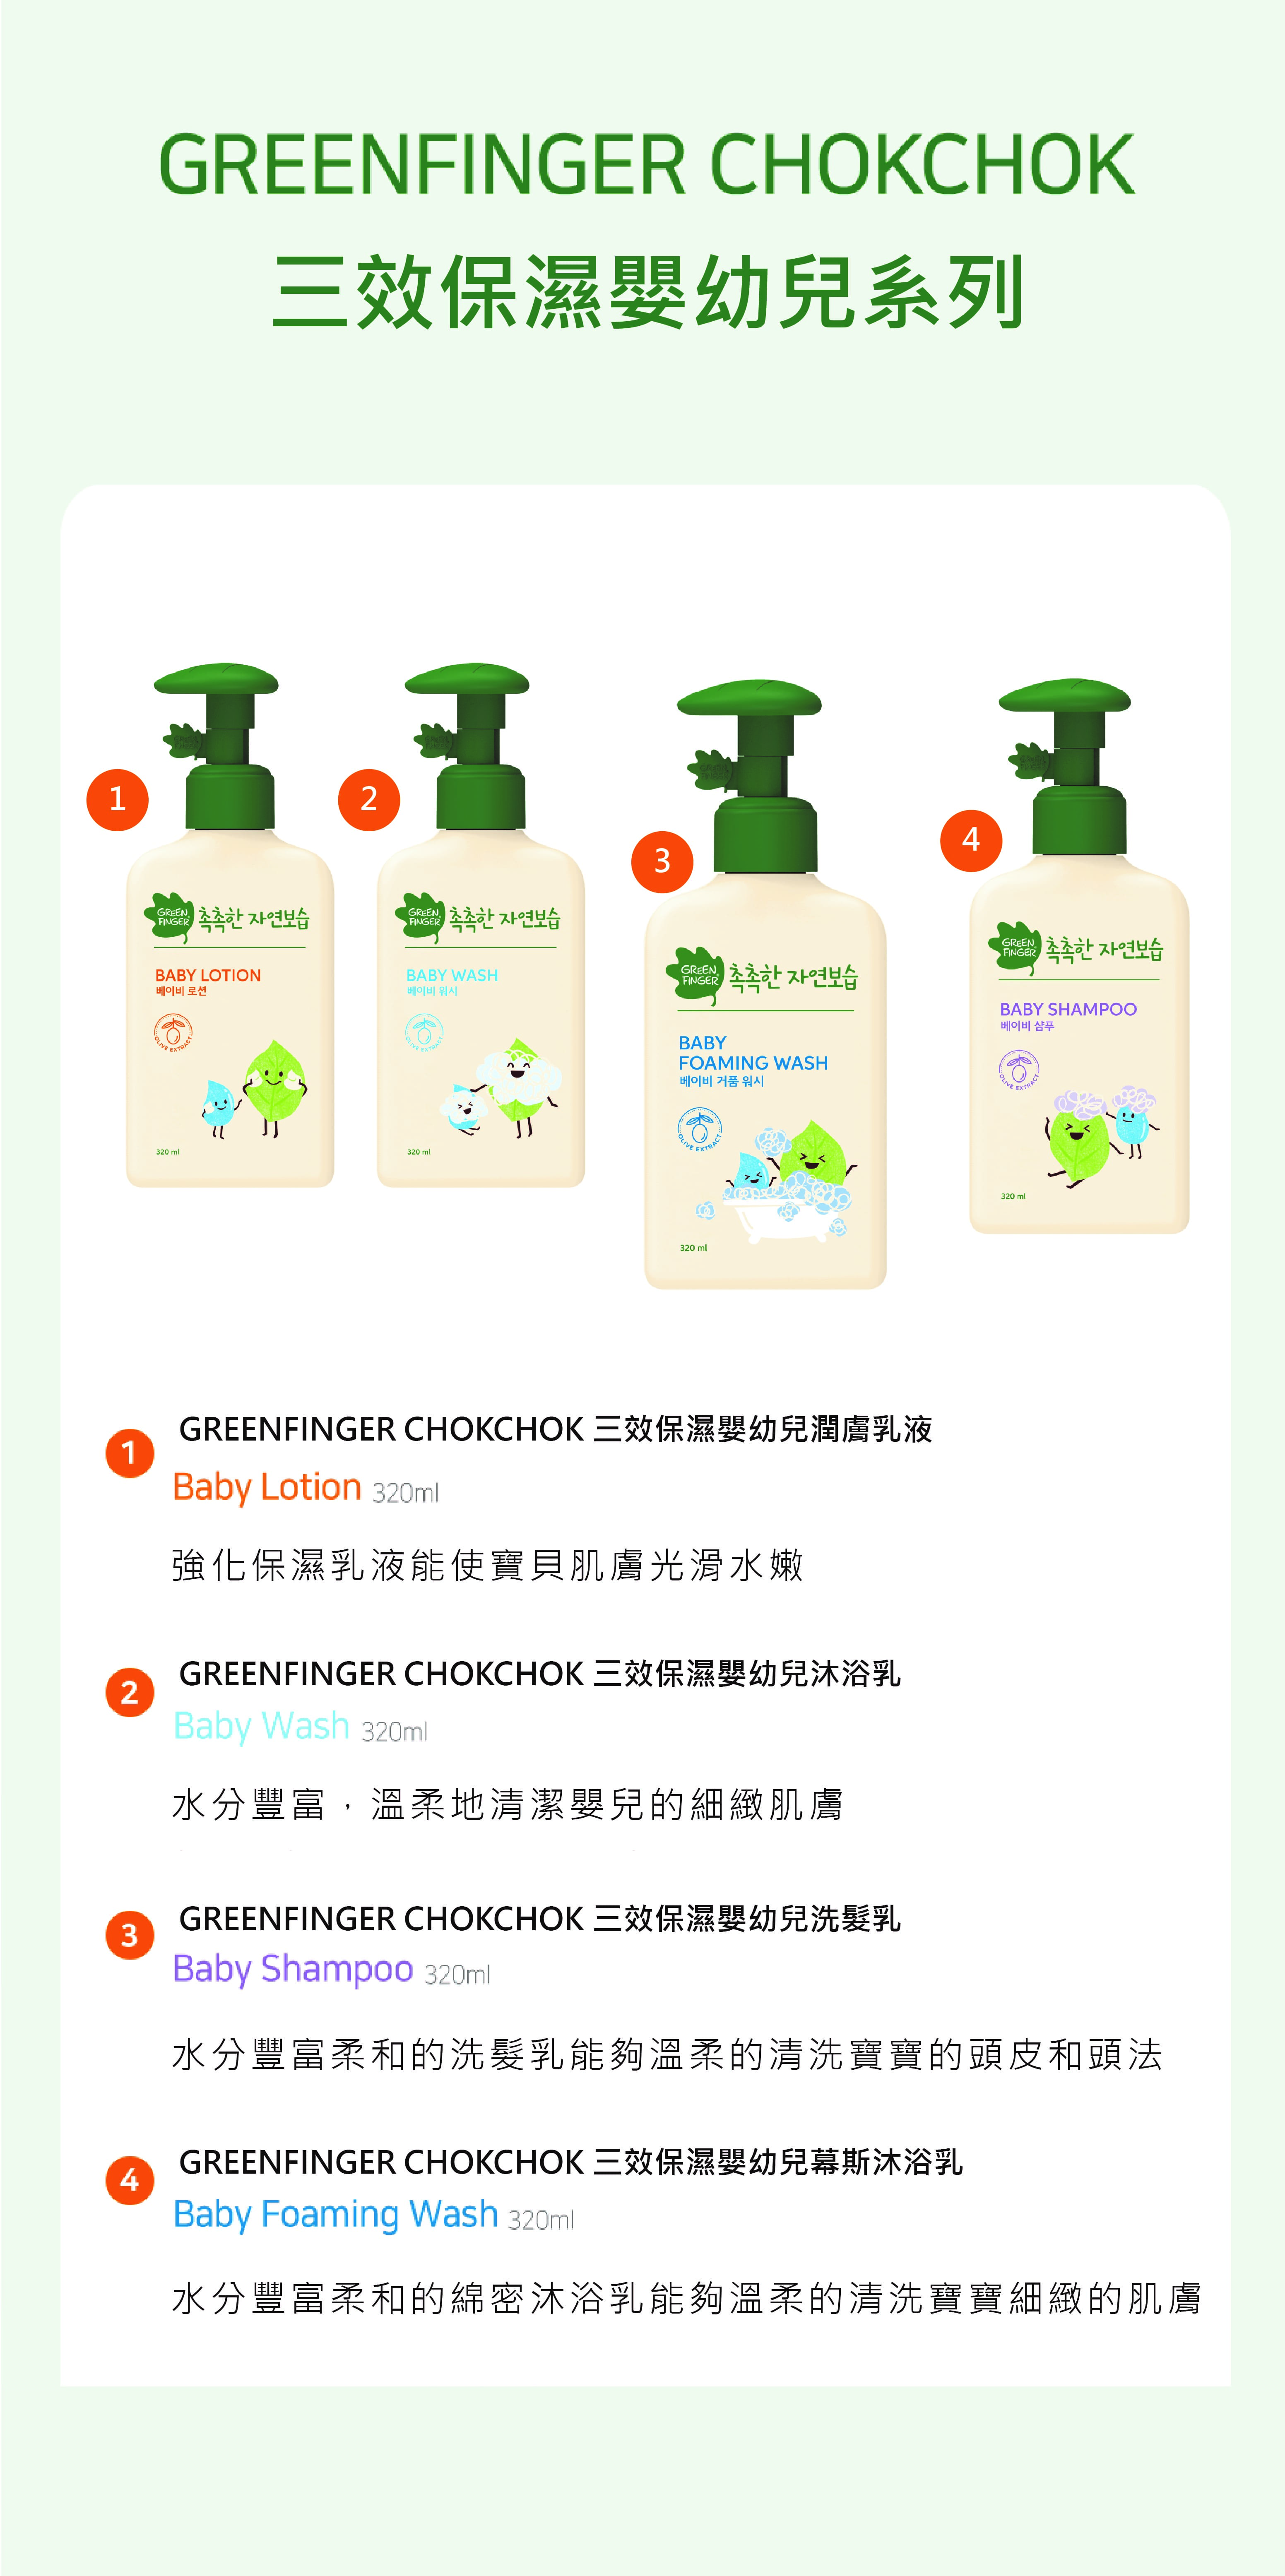 CHOK CHOK三效保濕嬰幼兒潤膚乳液介紹